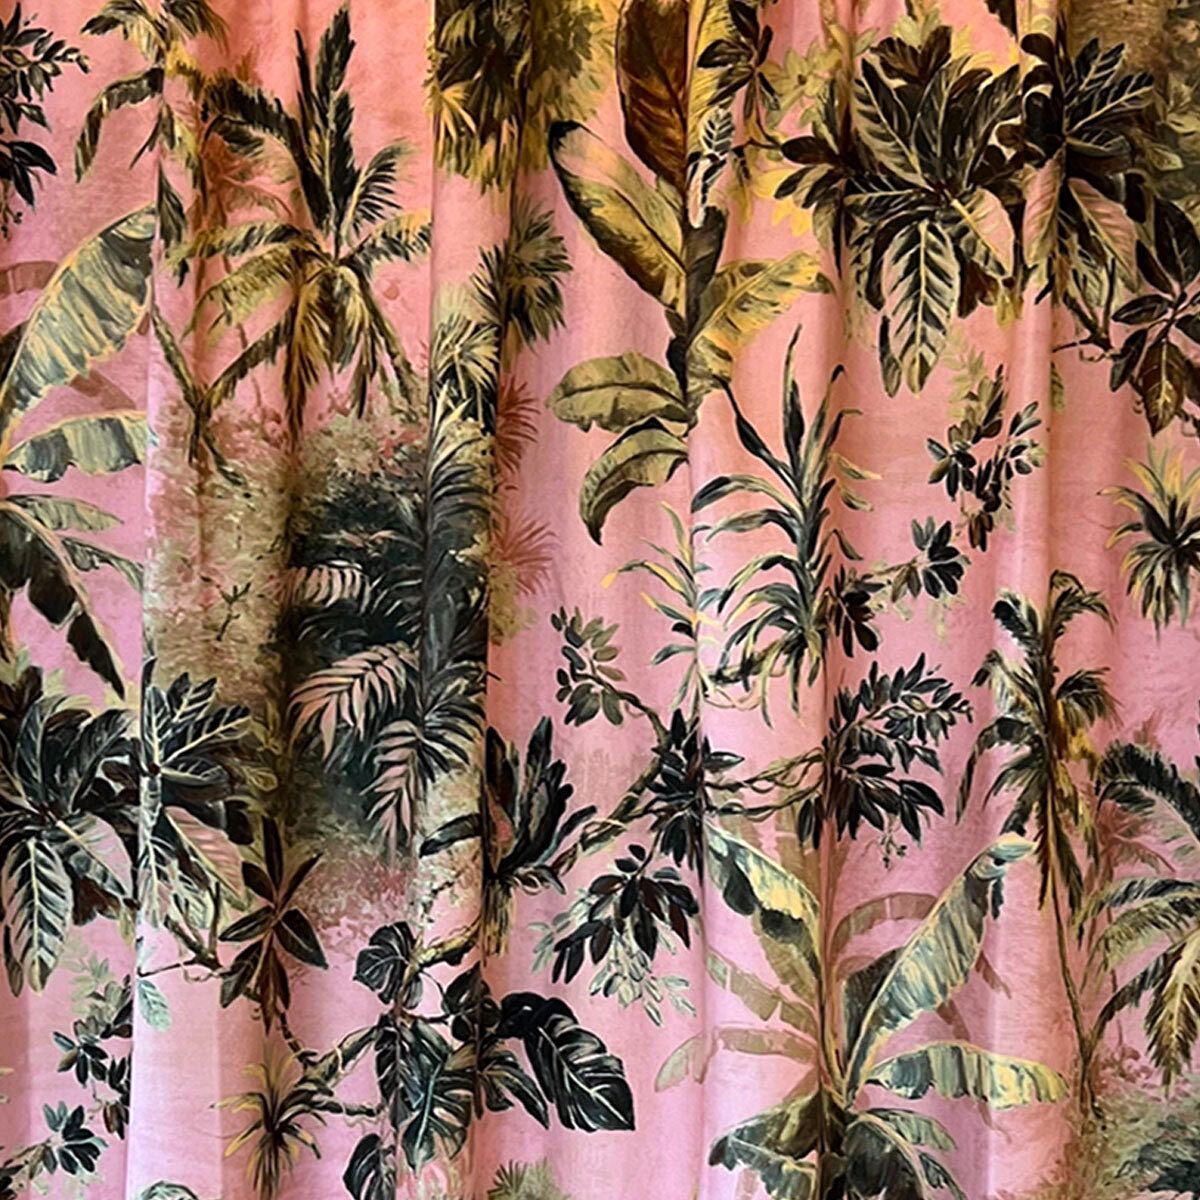 Timor Blush Printed Velvet Panel Curtain